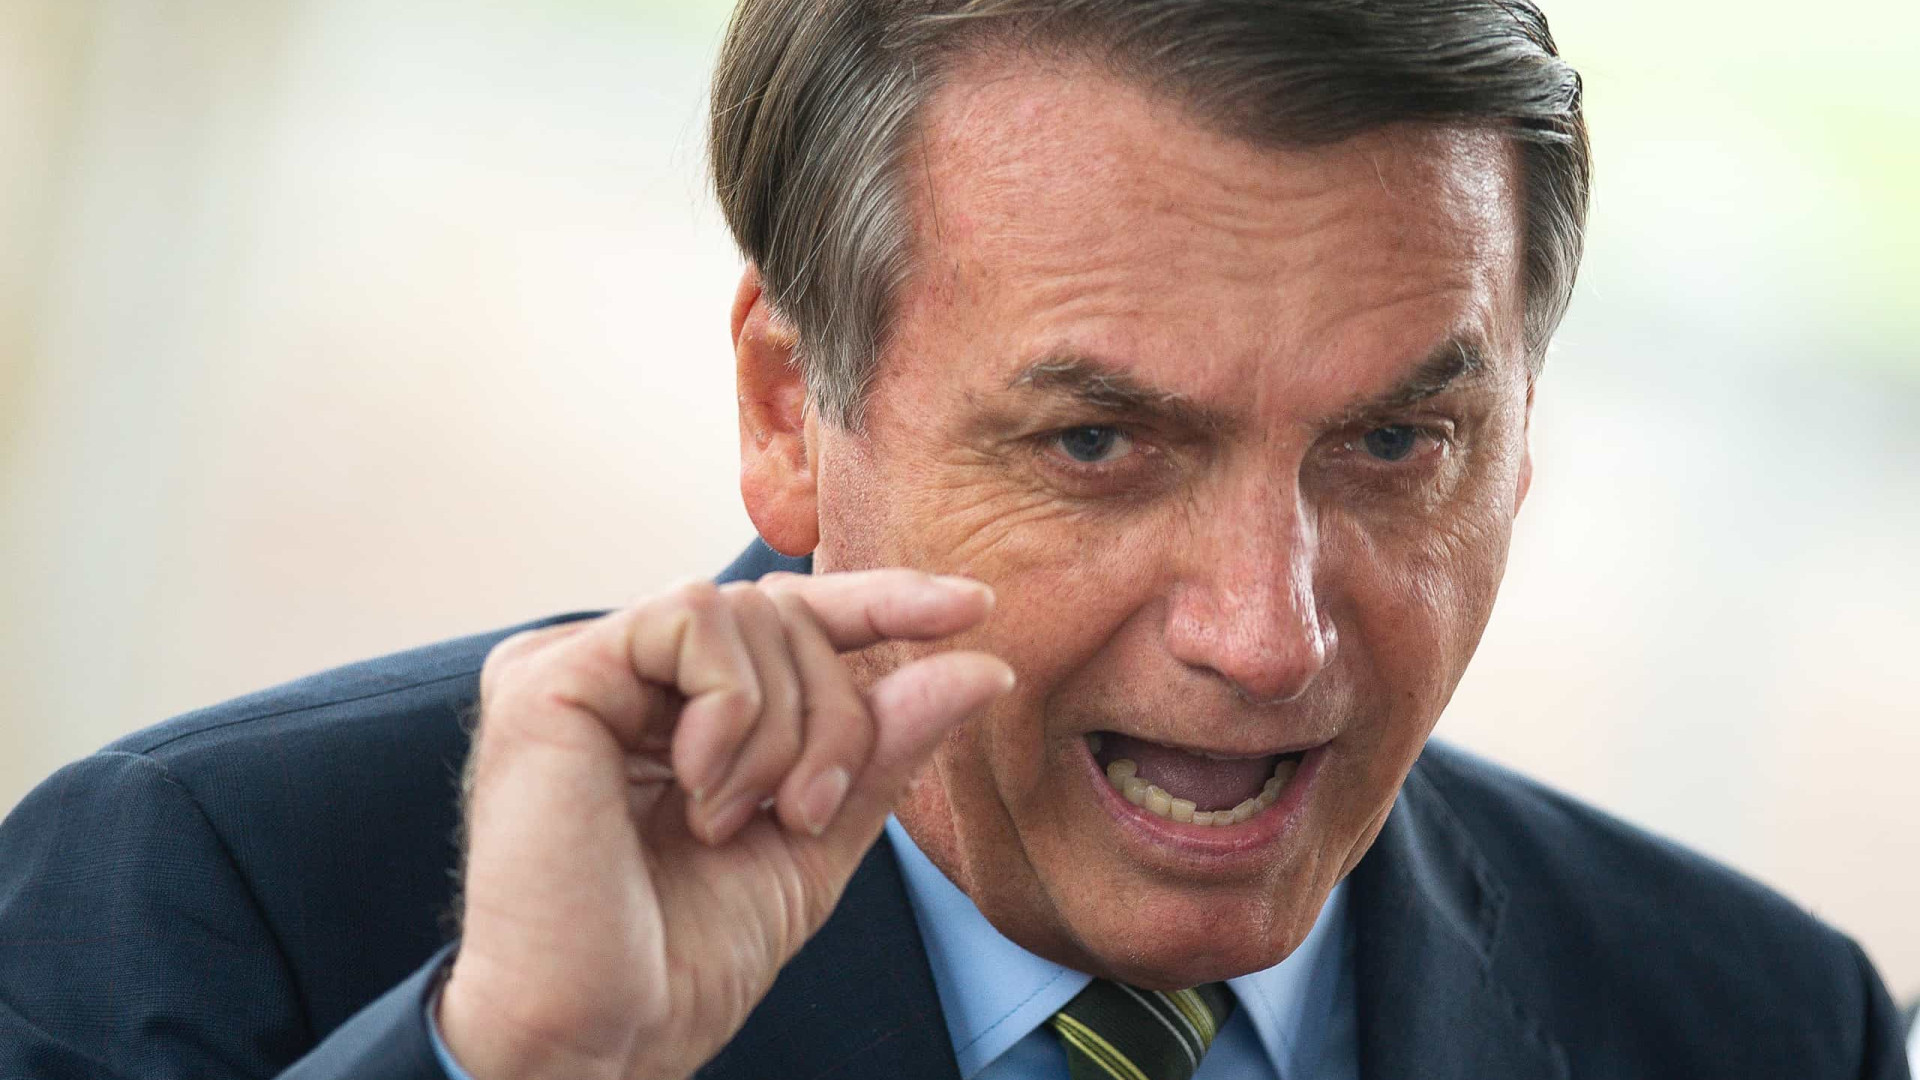 Mais uma que Jair Bolsonaro ganha, diz presidente sobre suspensão de testes da Coronavac